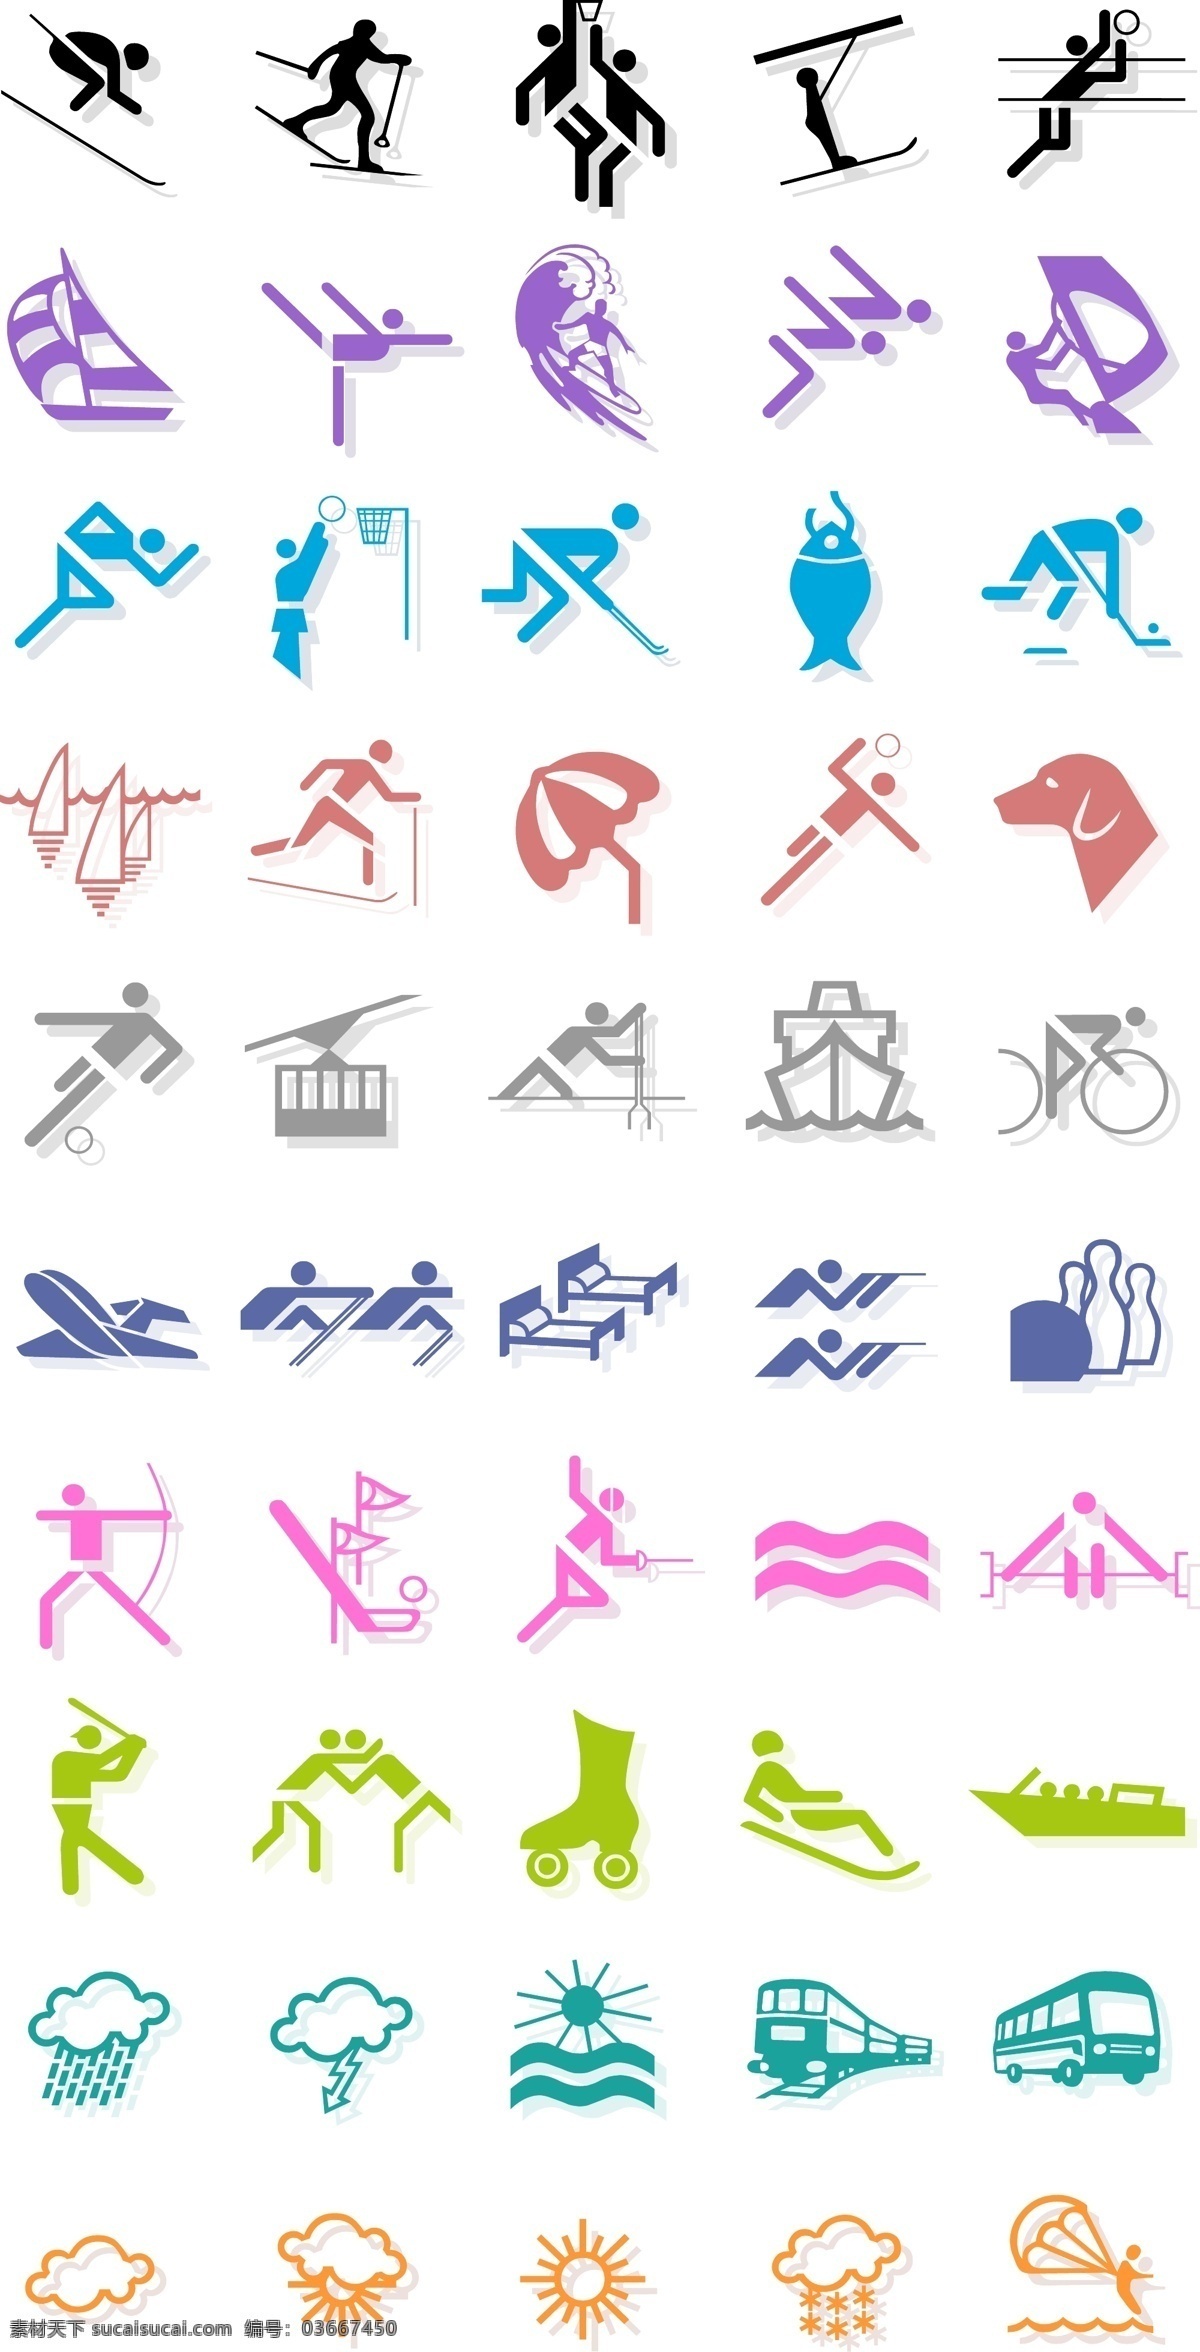 奥运 图标 体育 运动 标识标志图标 公共标识标志 ai矢量 矢量图库